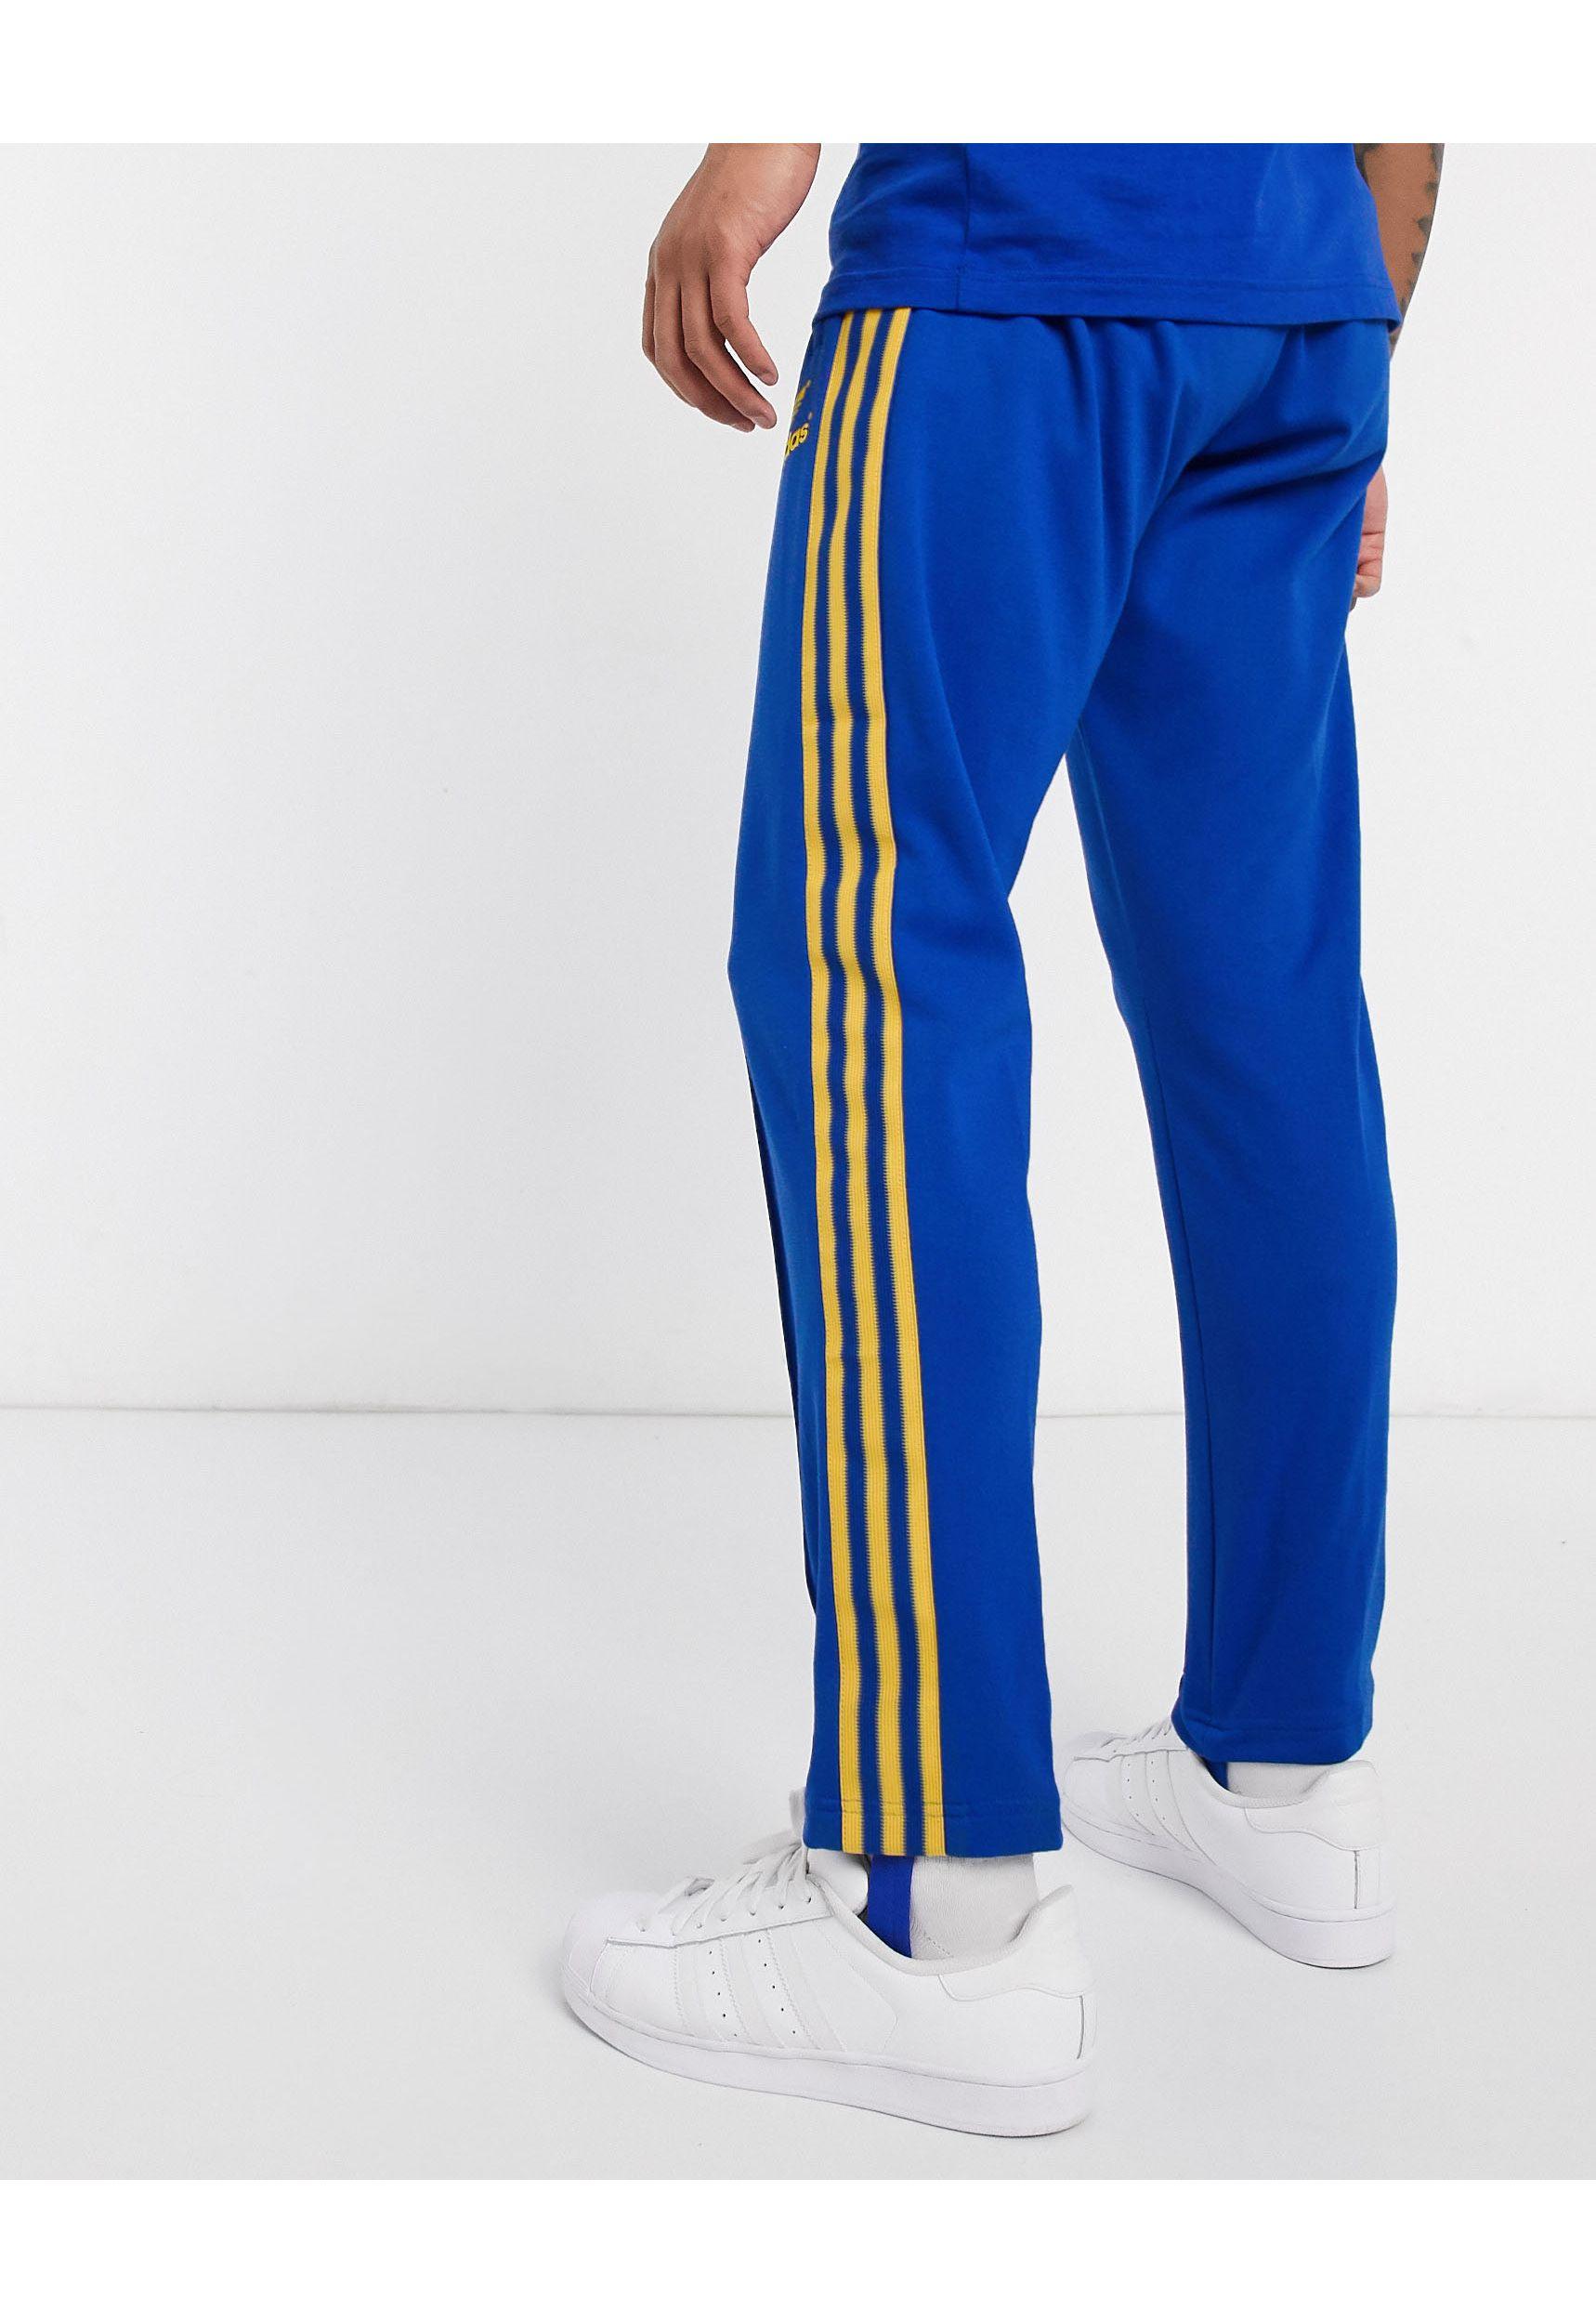 adidas Originals Retro 70's joggers in Blue for Men - Lyst